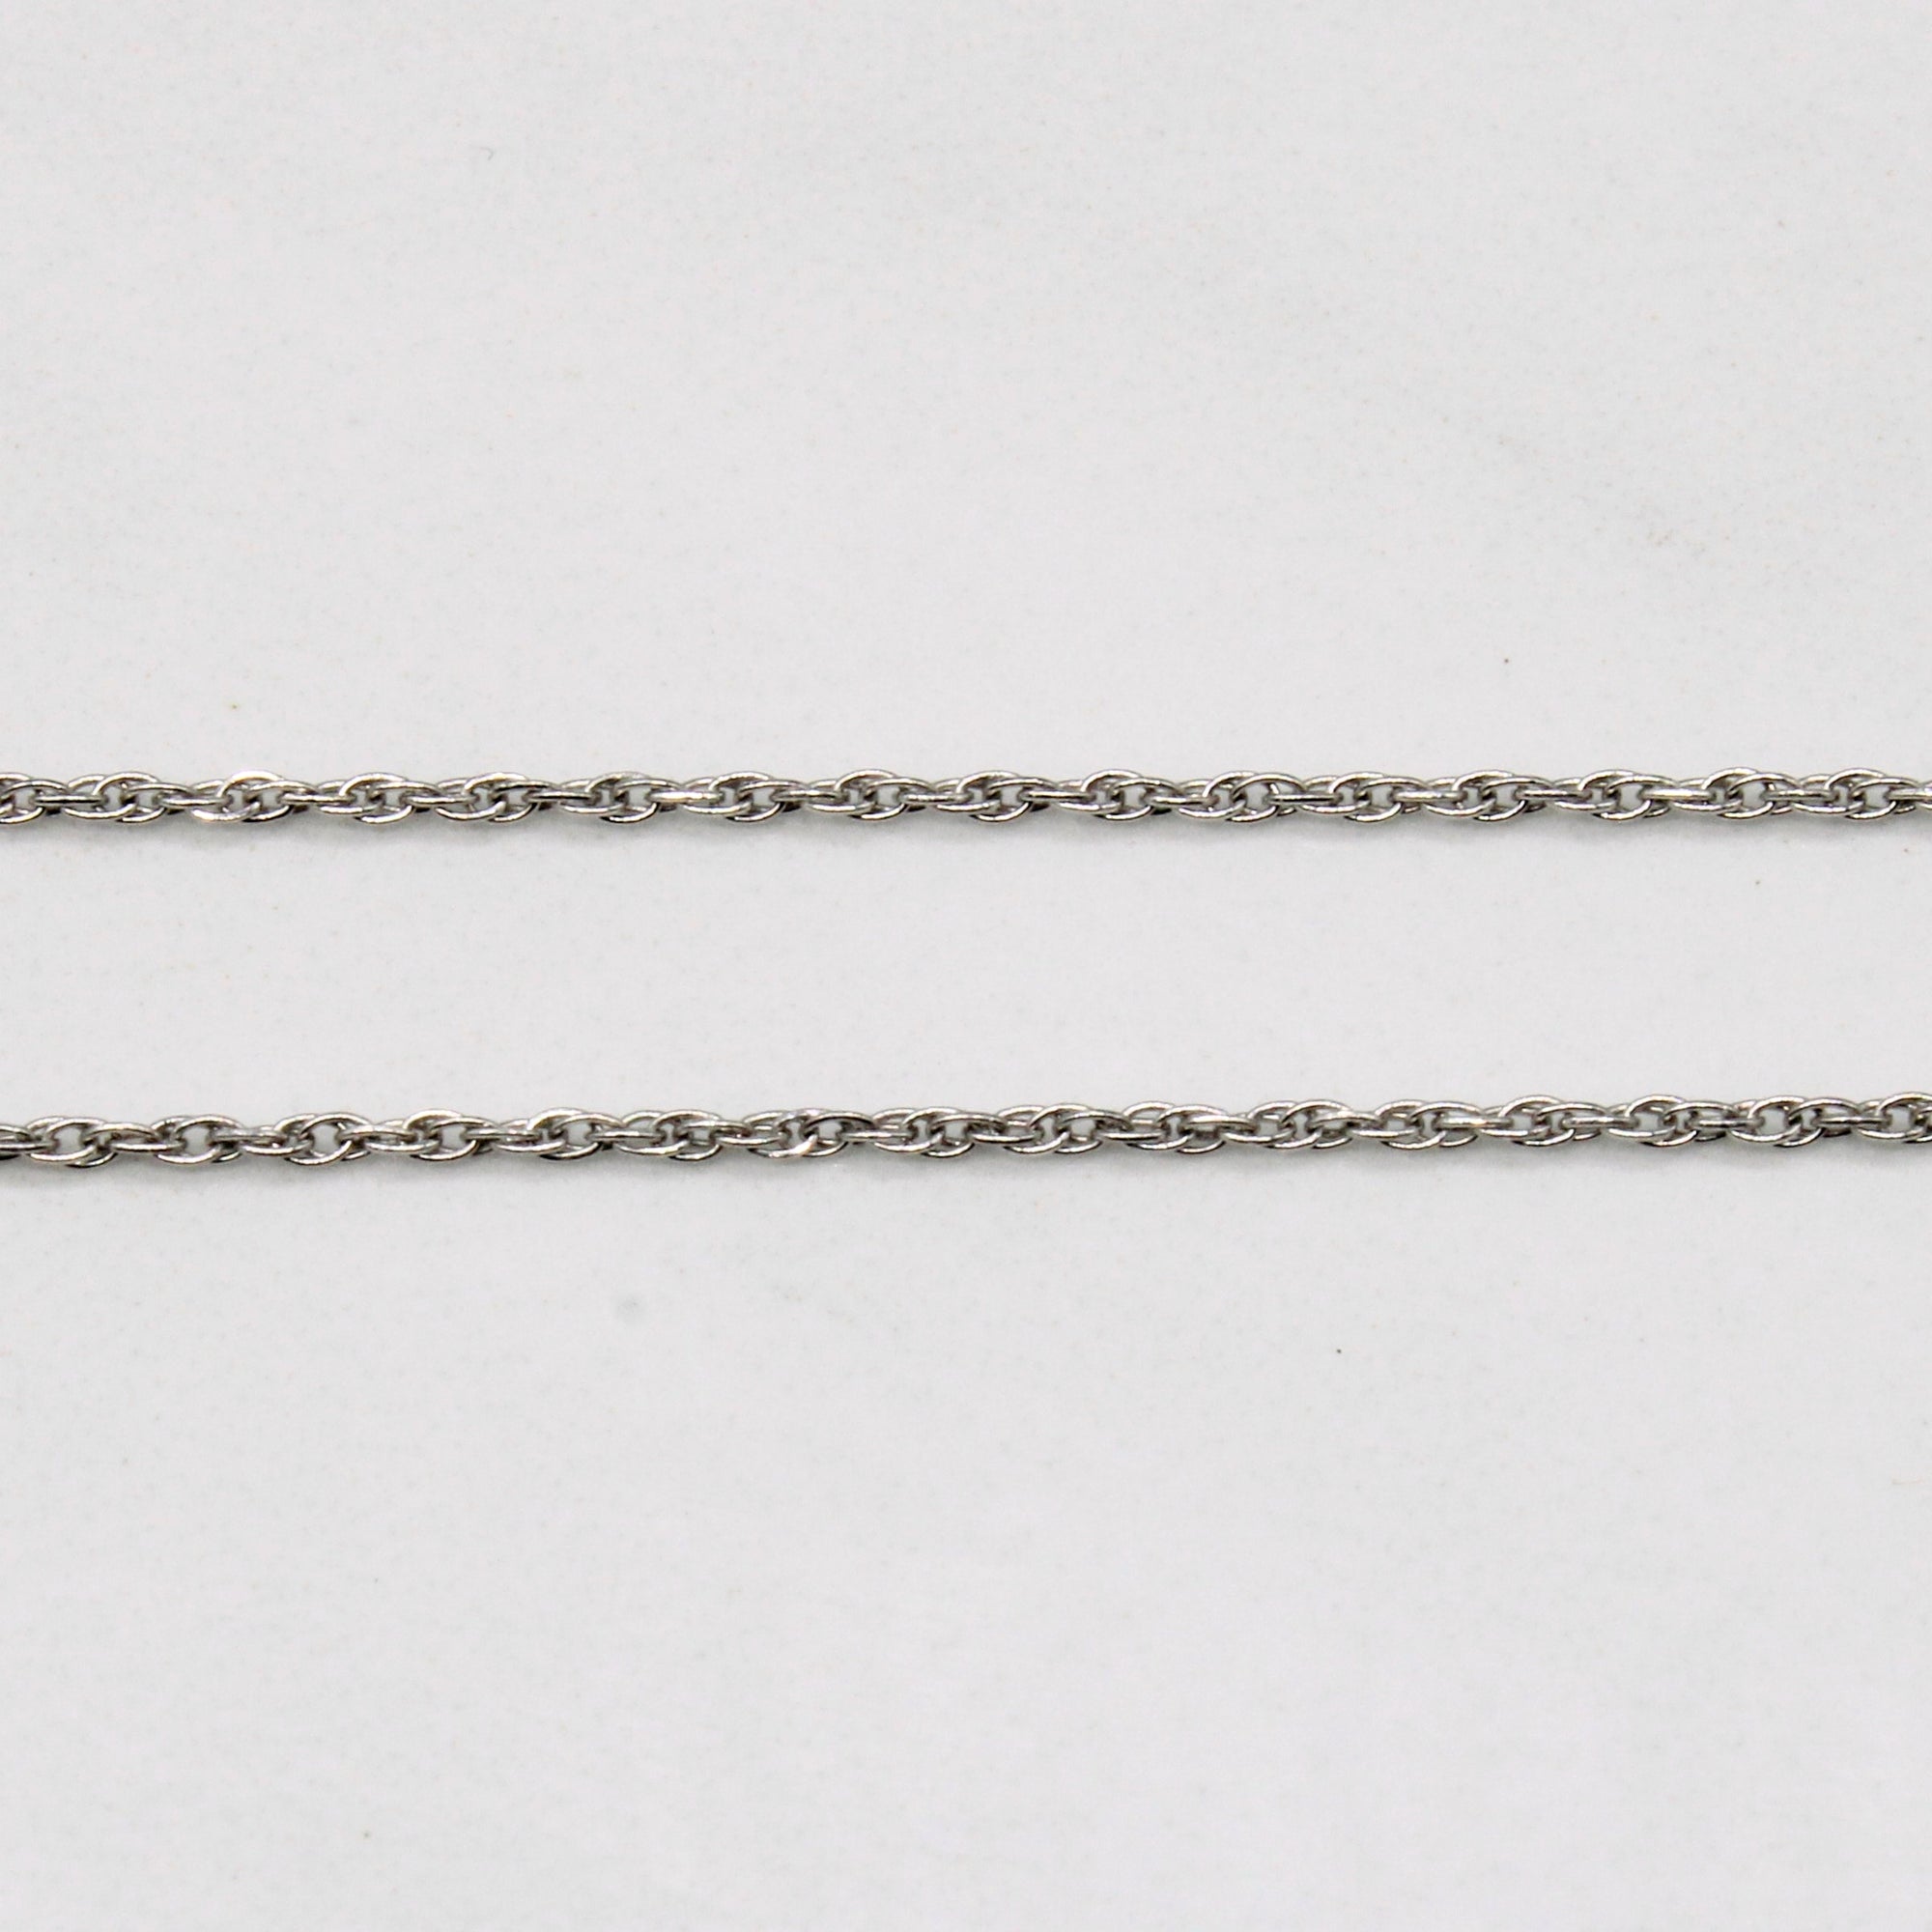 Diamond Cupid's Arrow Pendant & Necklace | 0.02ct | 18